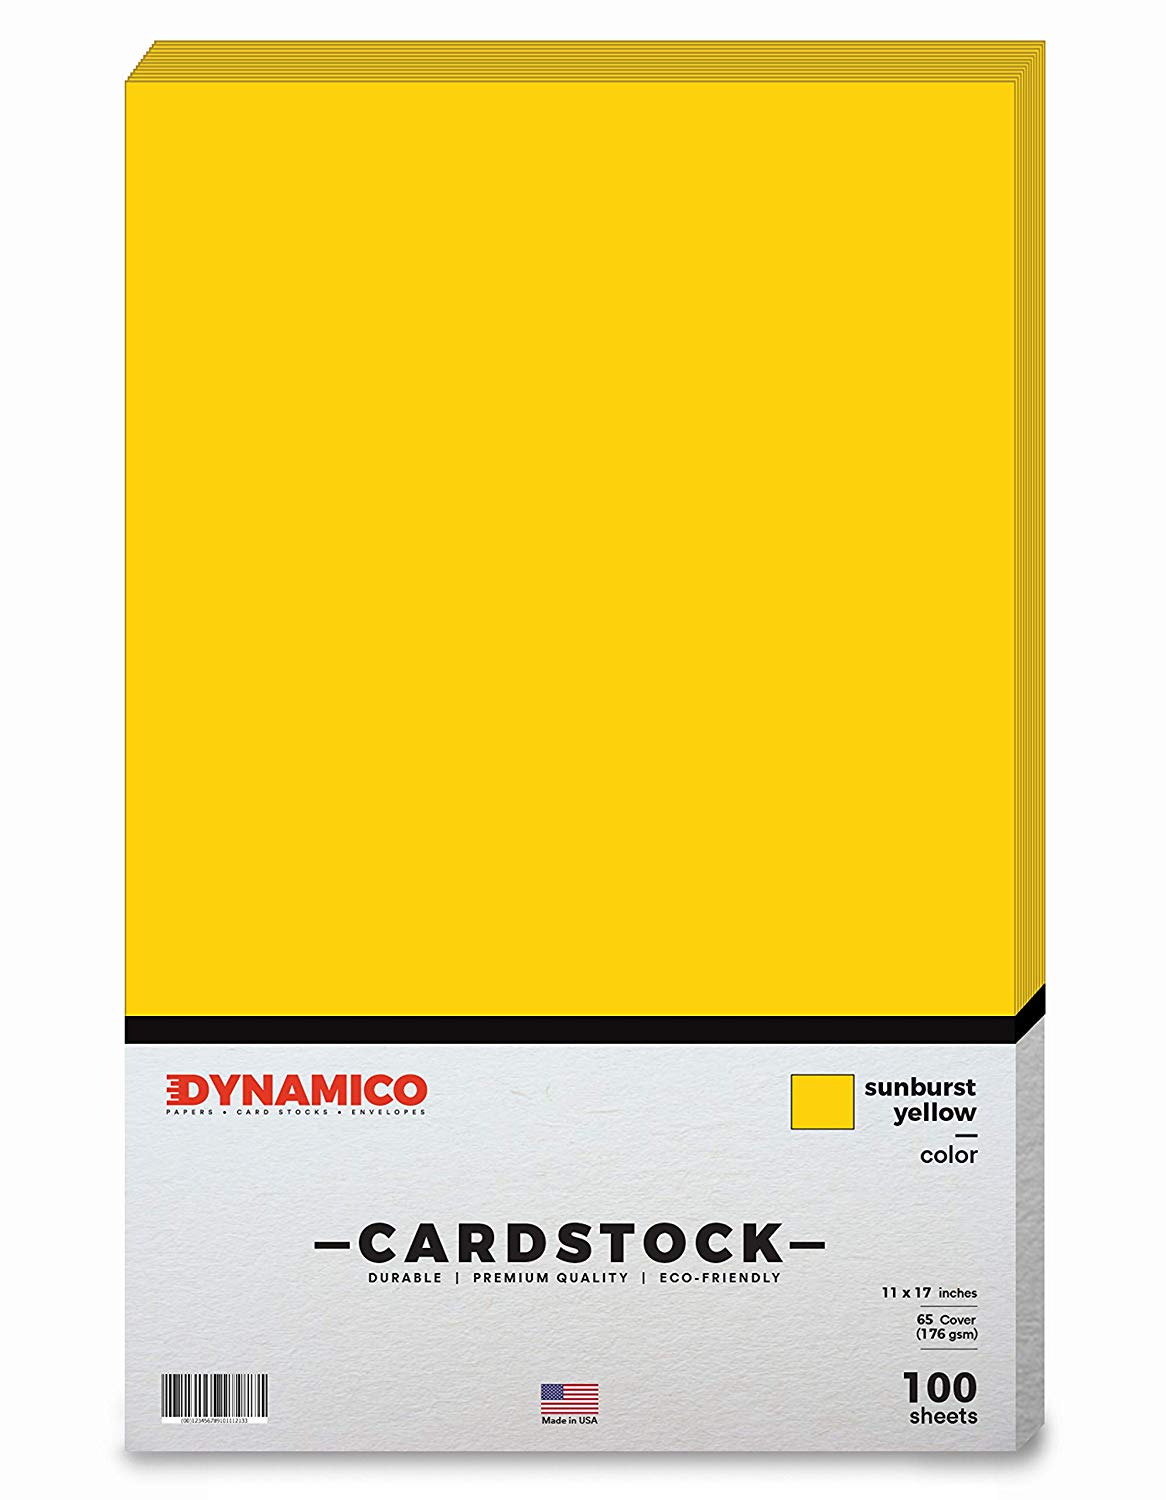 Sunburst Yellow 11 x 17 Cardstock Paper - Tabloid/Ledger - for